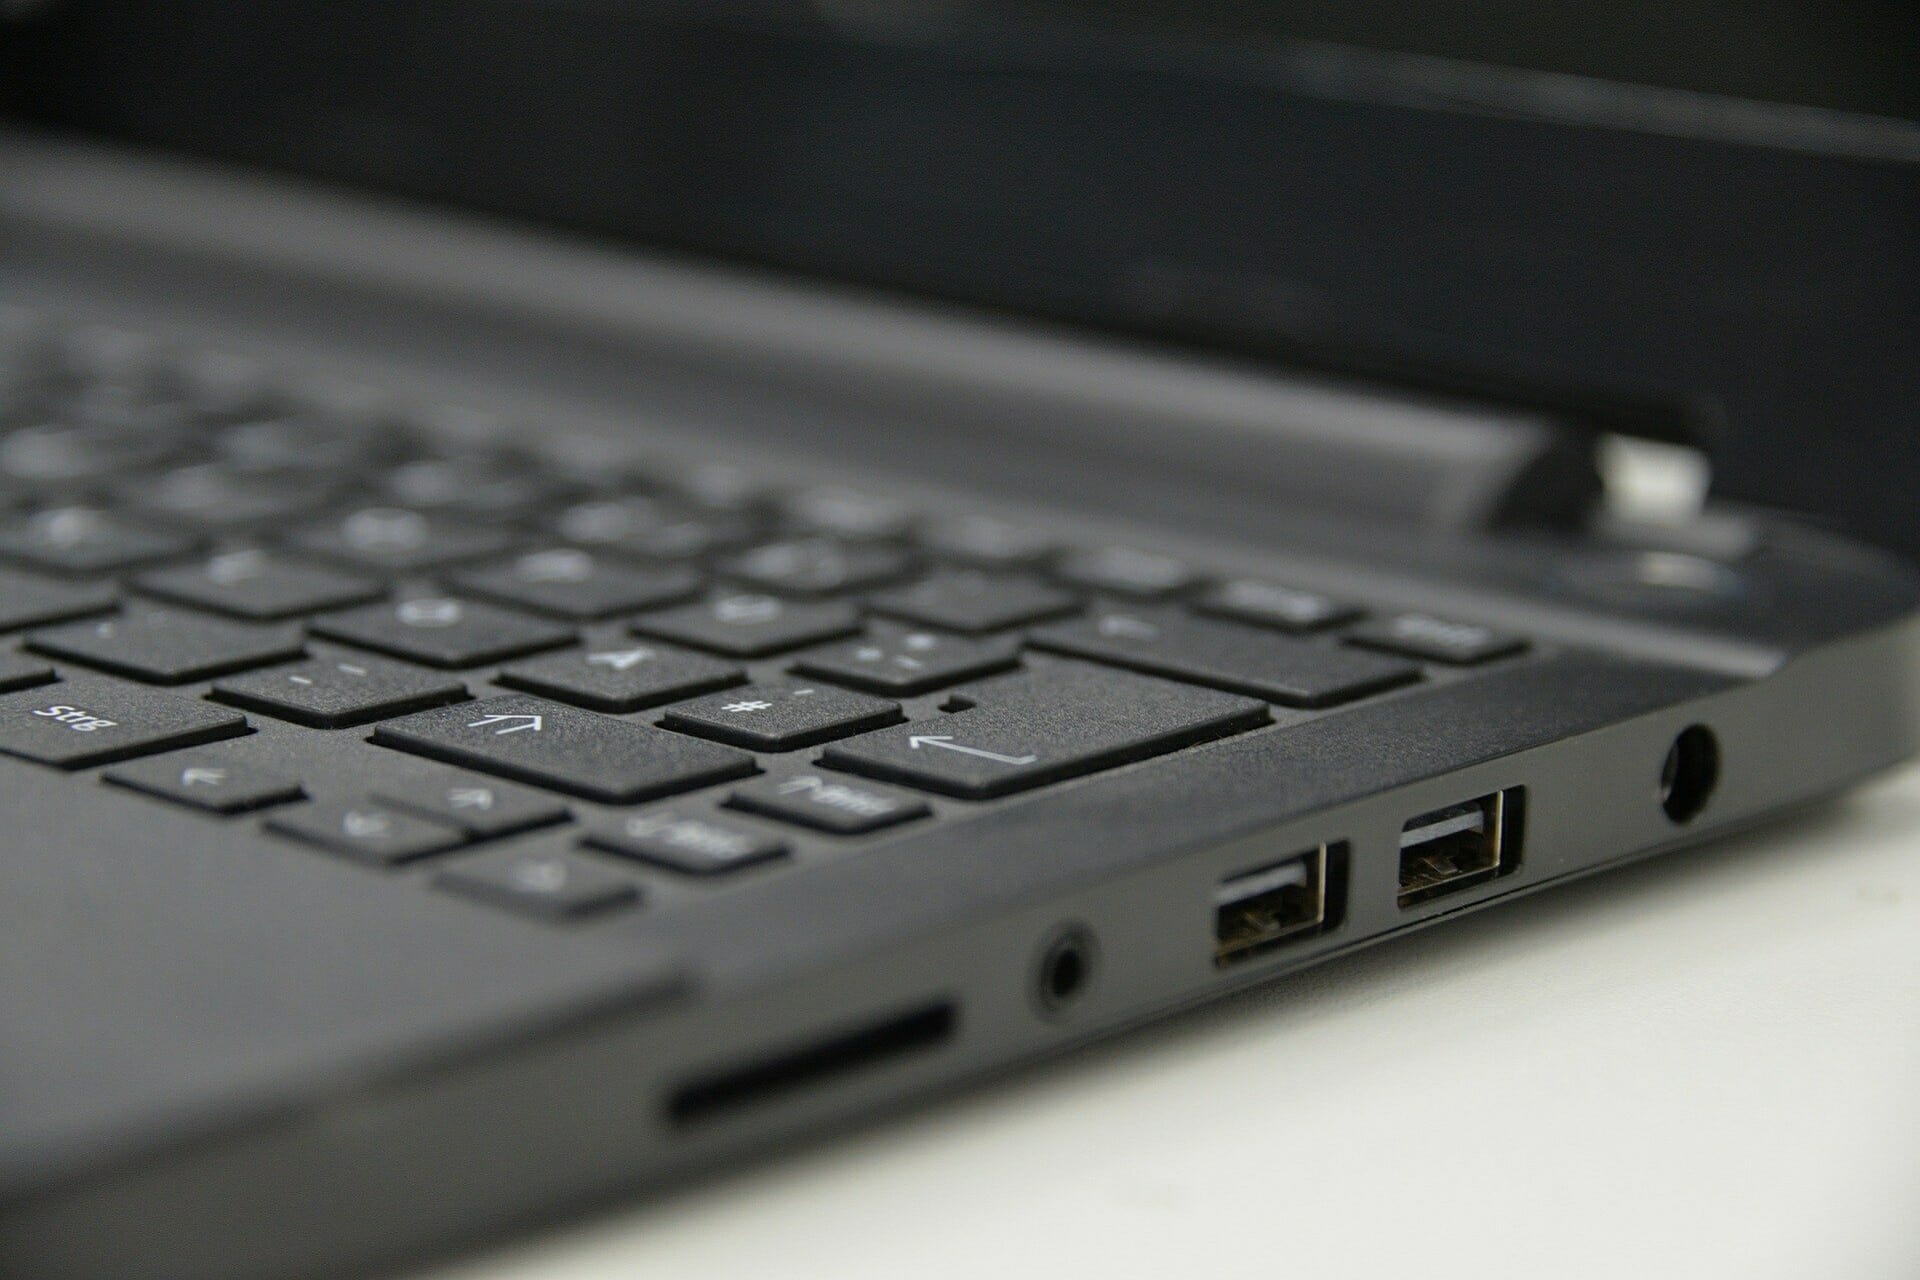 REVISIÓN: el puerto USB no funciona en las computadoras portátiles HP Envy